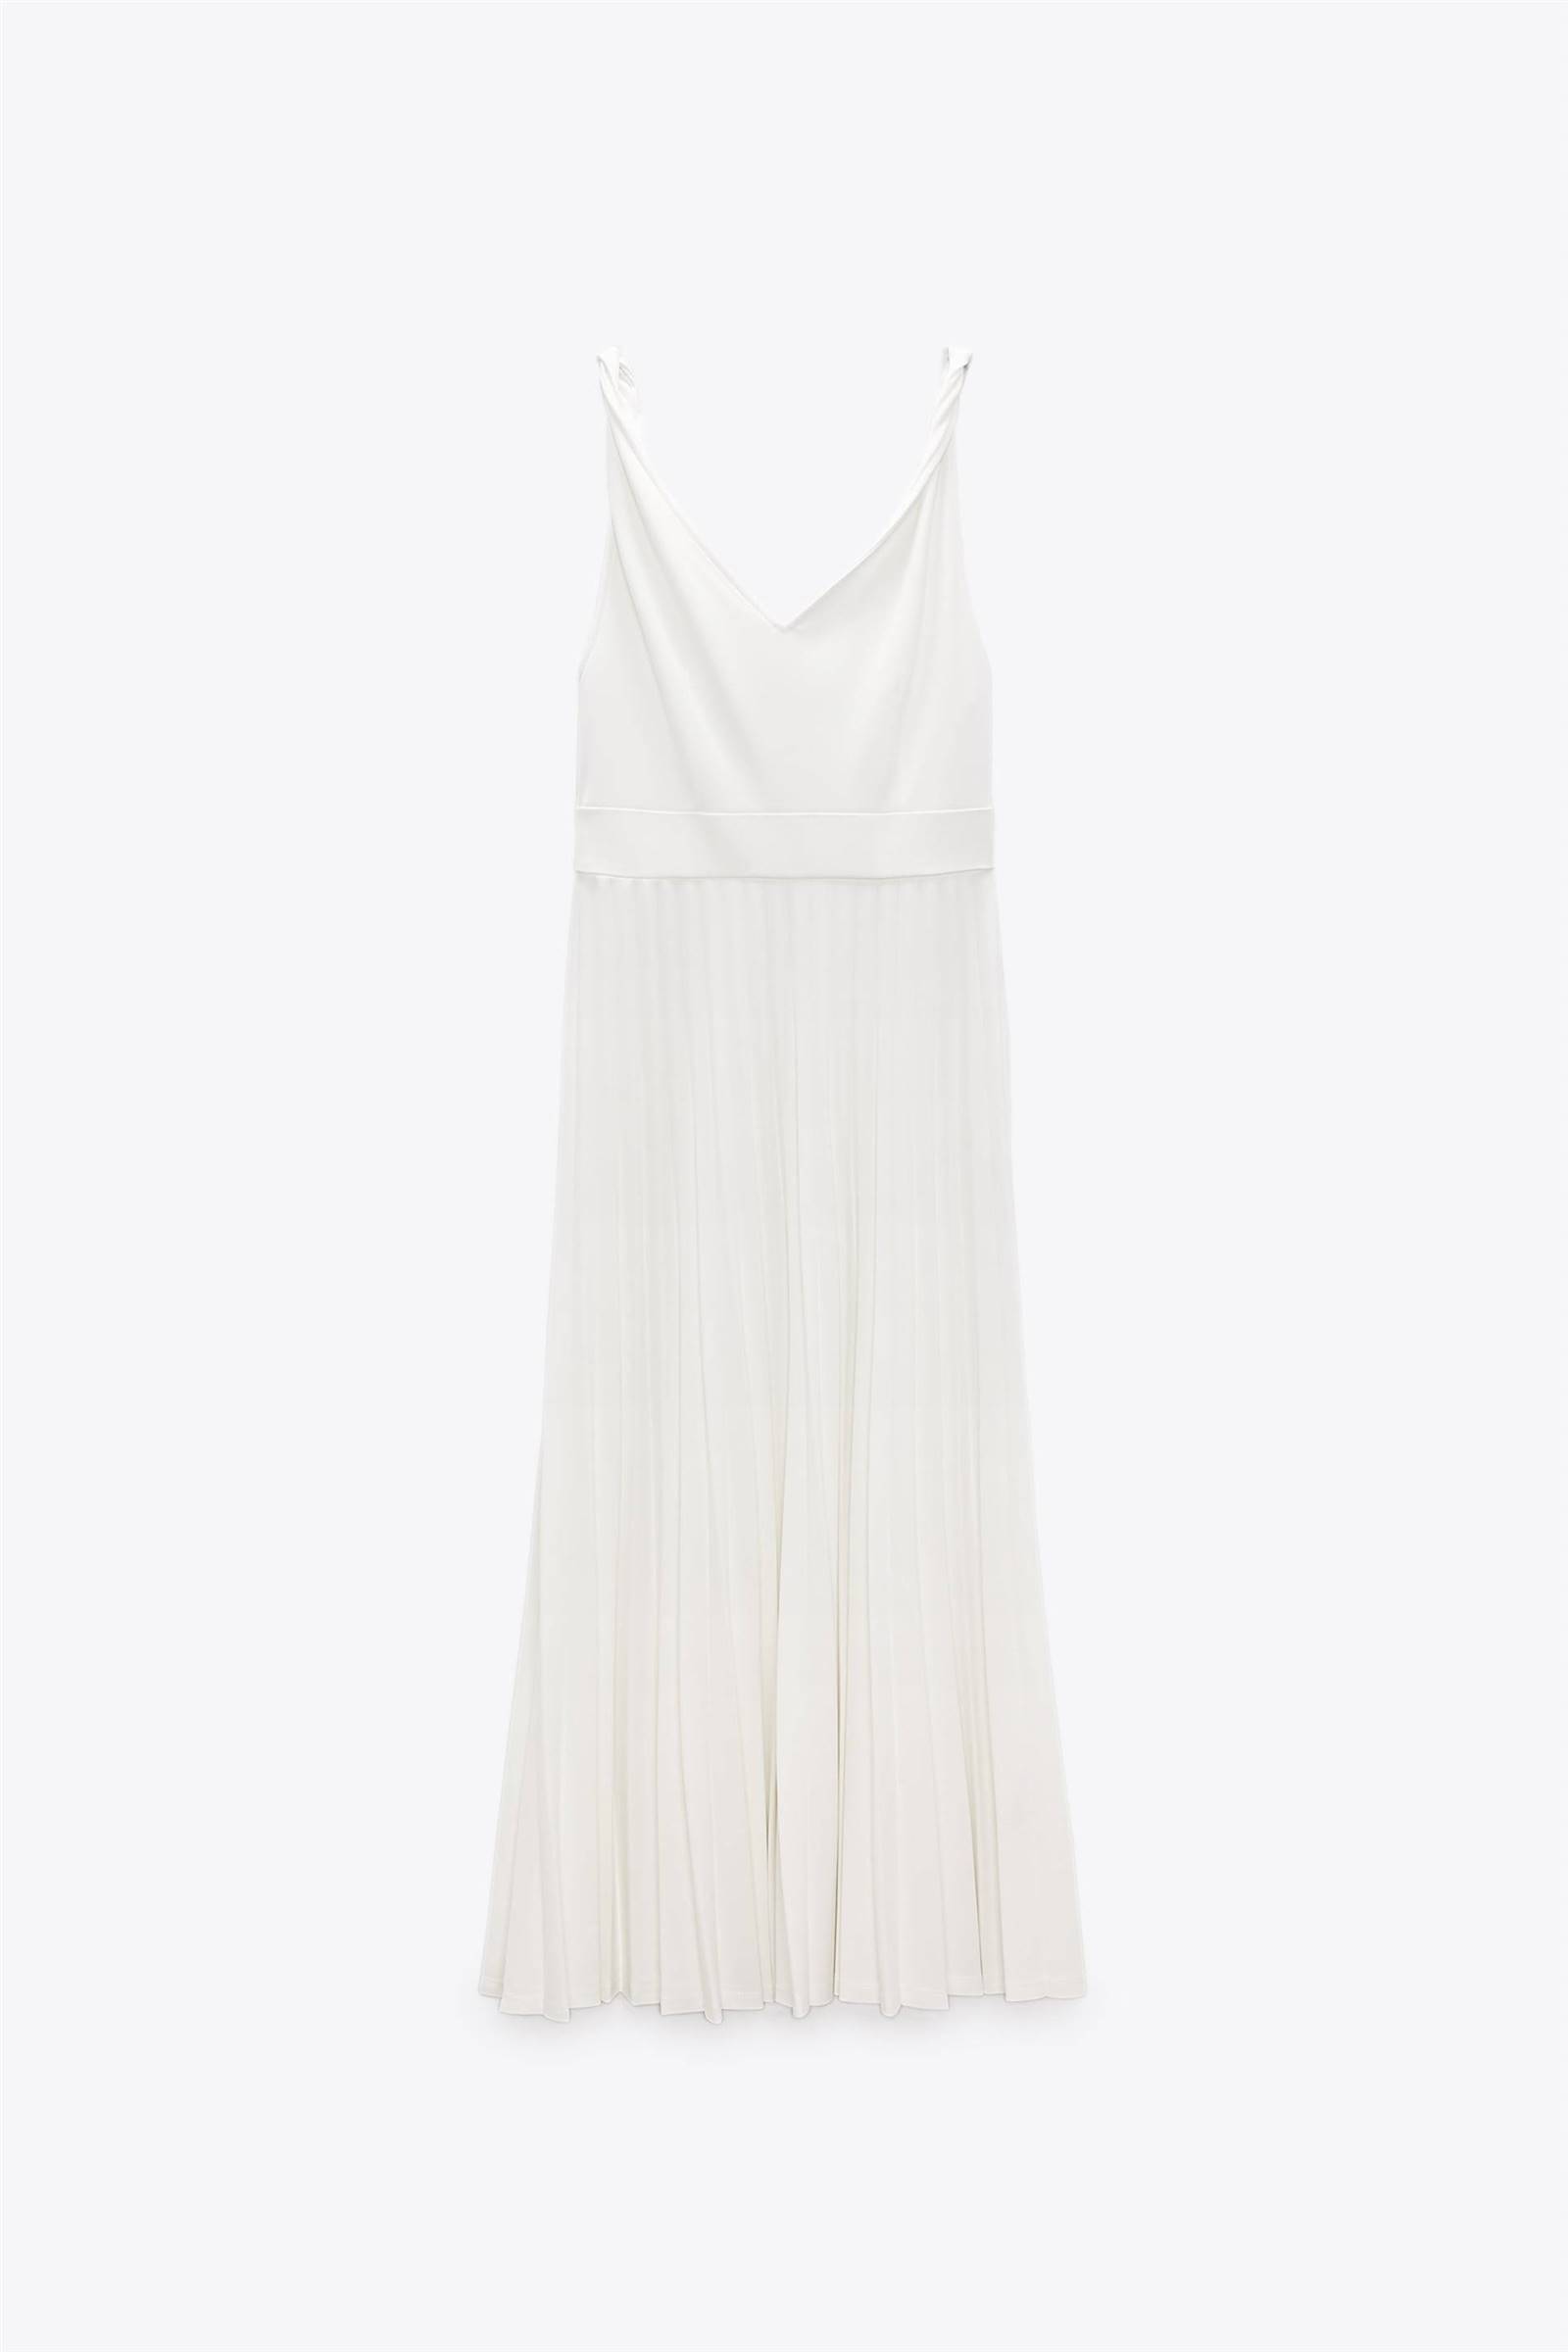 Vestido blanco plisado de Zara